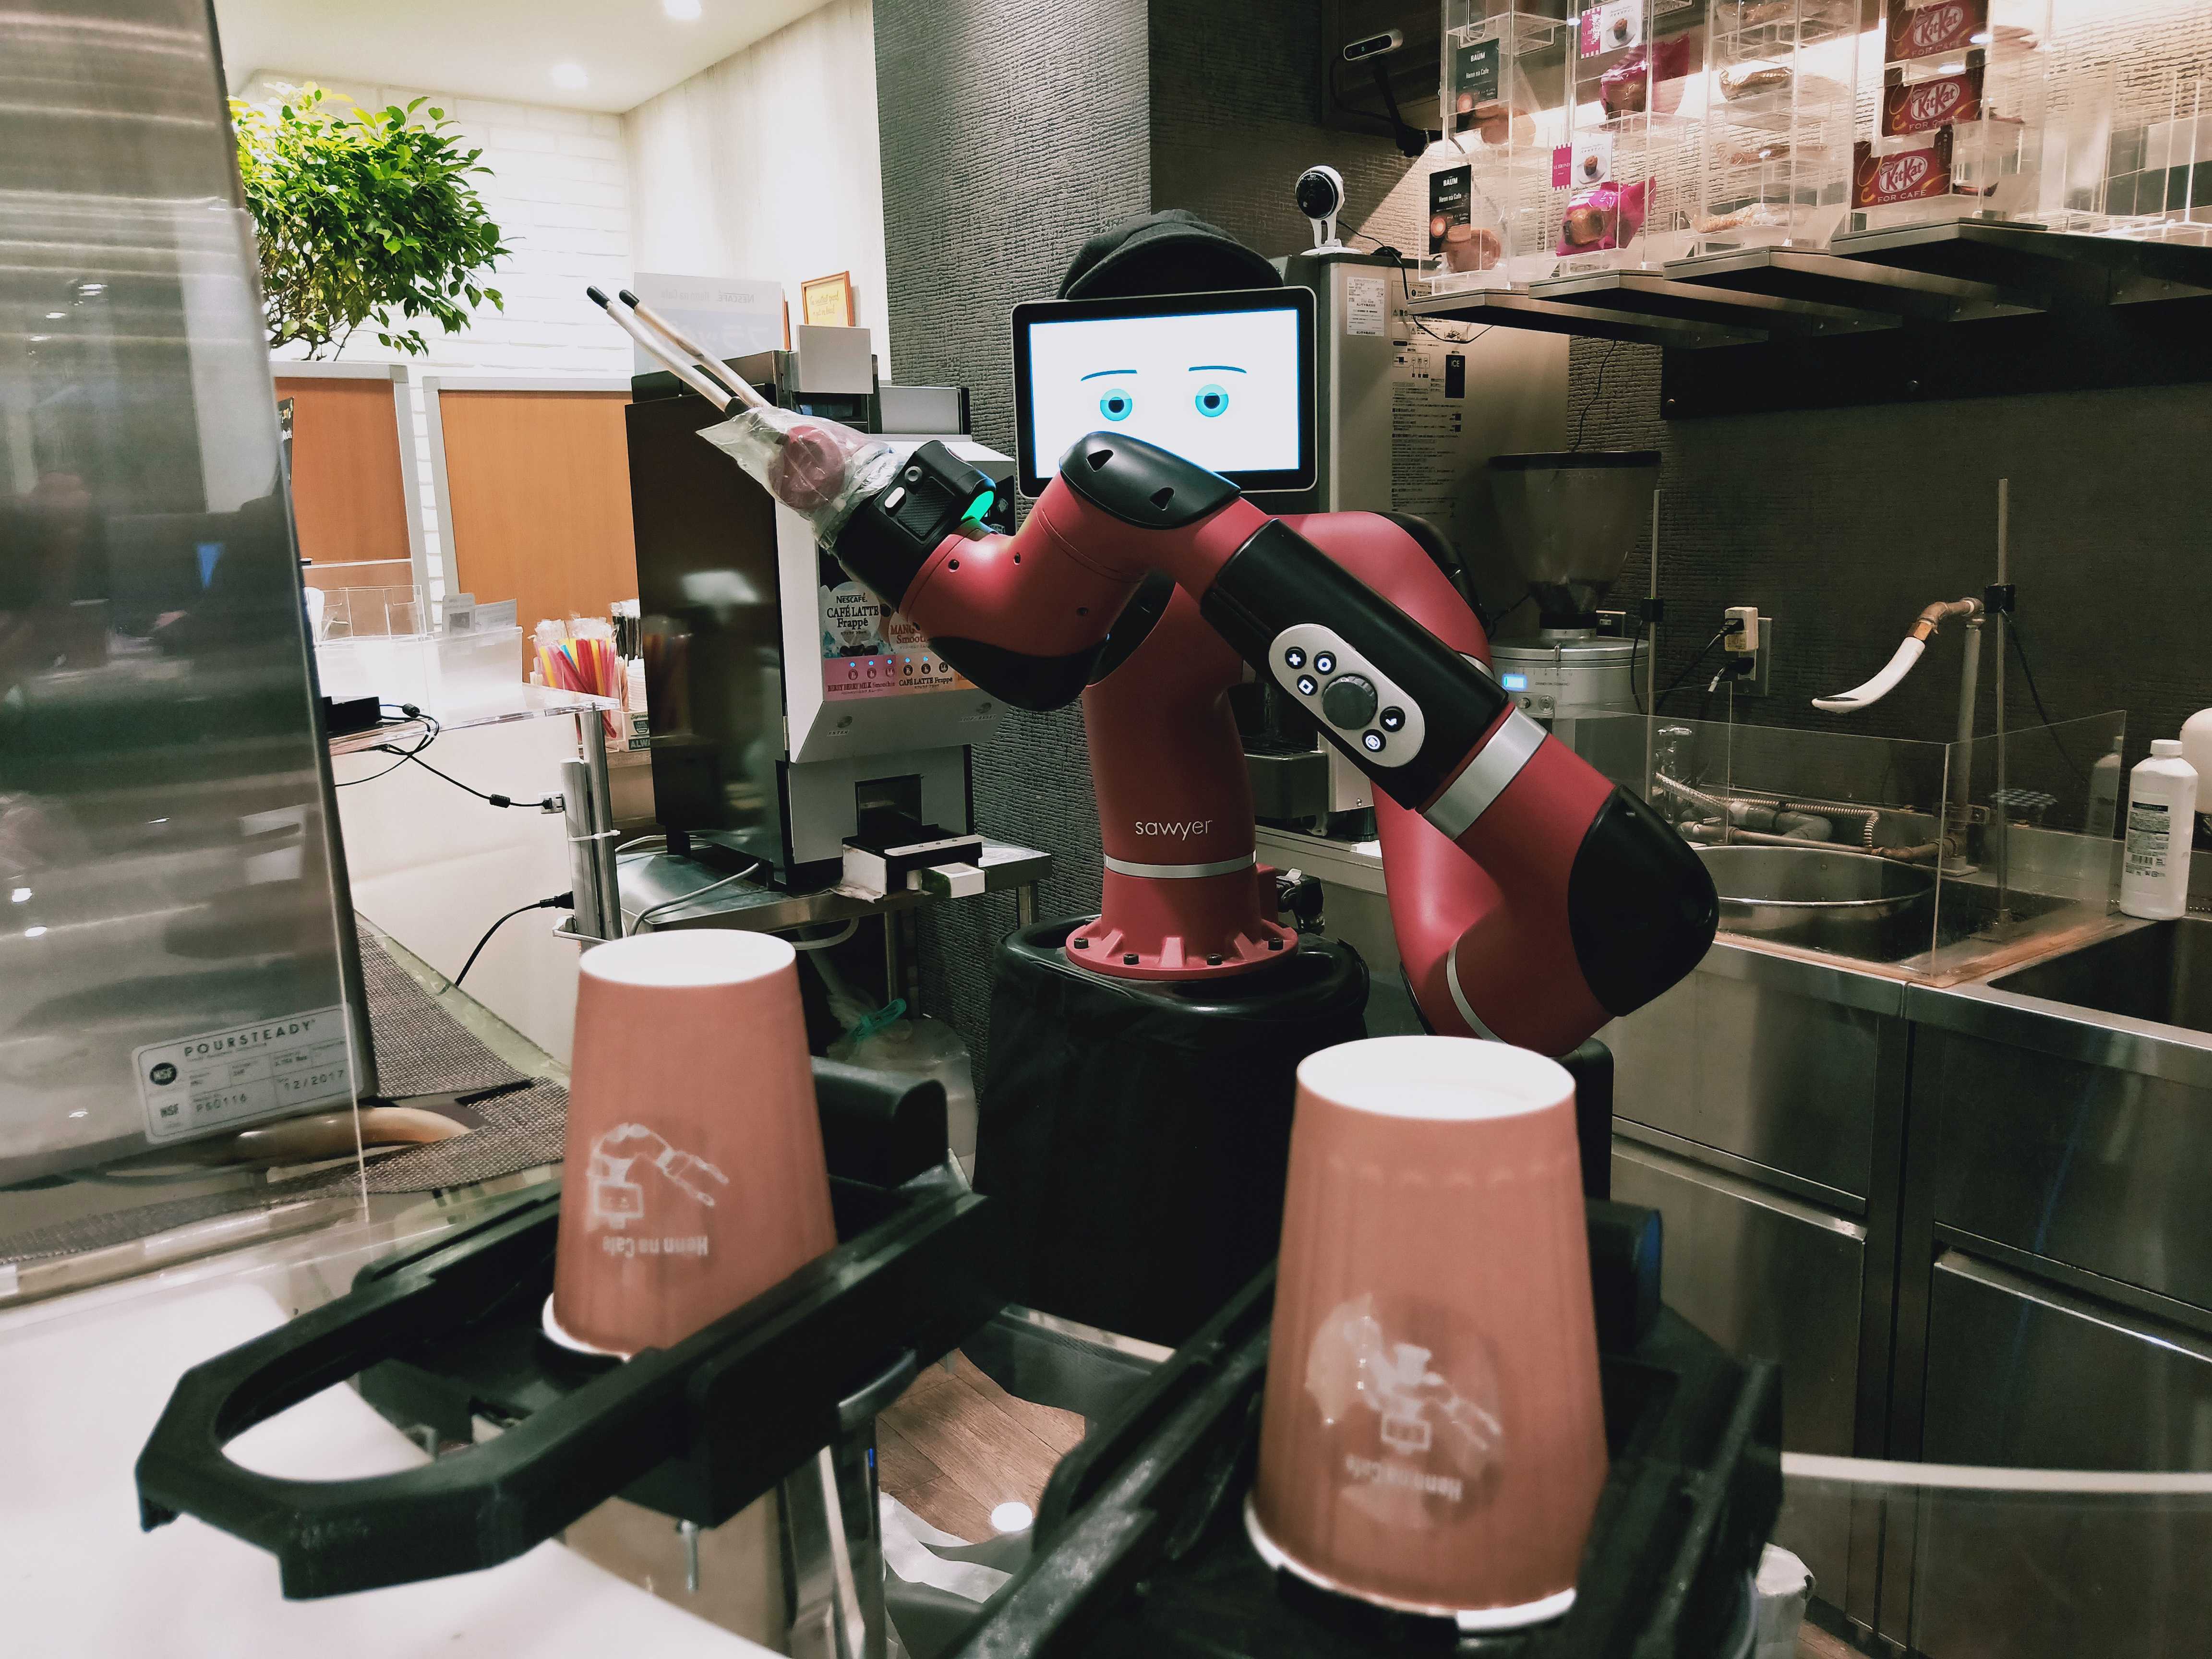 同社は、ロボティクスの実装を仕事にしている会社だから、ロボット技術に興味を持つエンジニアには、楽しくてやりがいのある仕事が待っている。